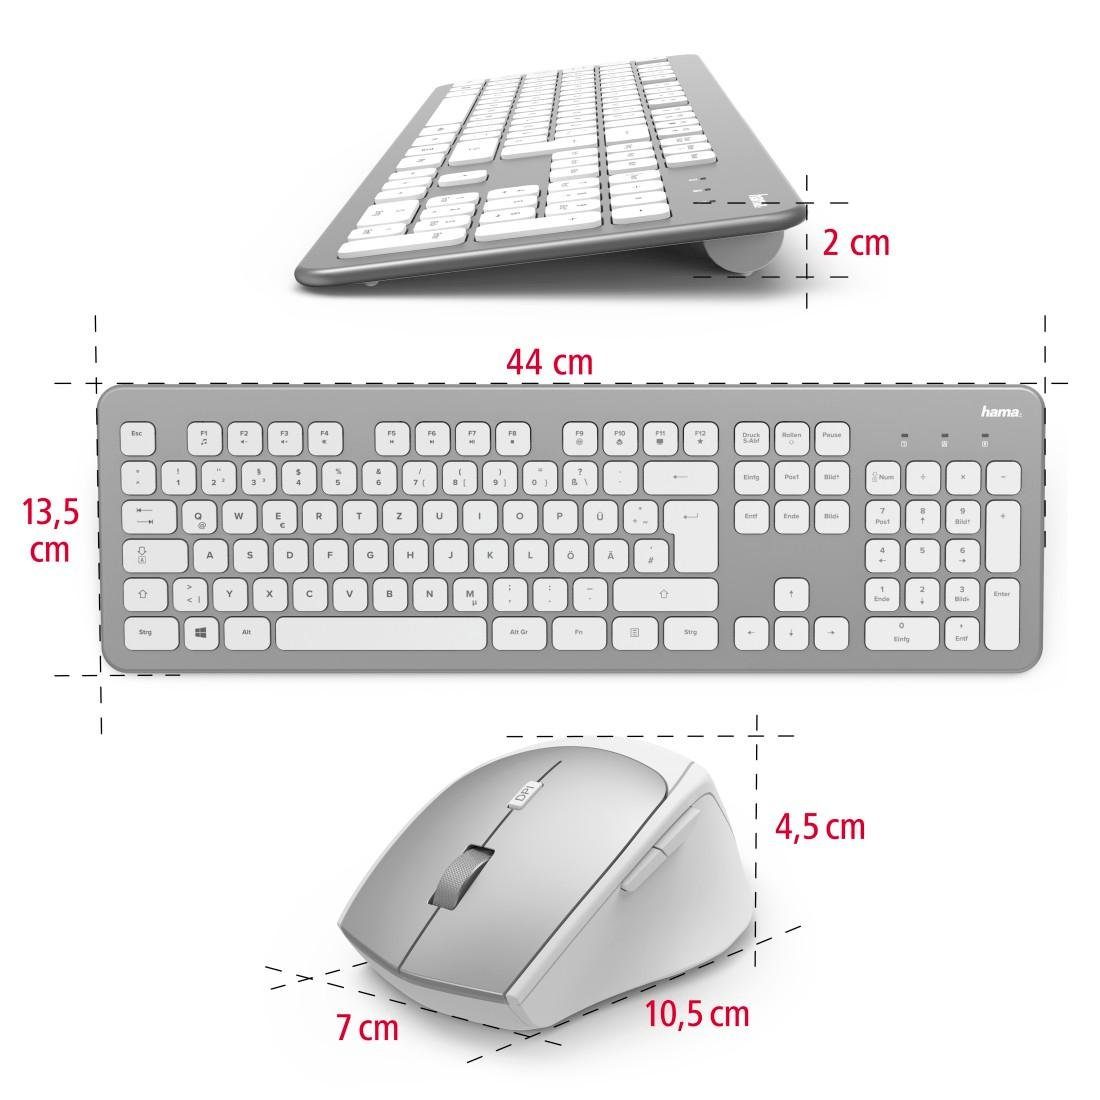 Funktastatur-/Maus-Set und "KMW-700" Tastatur- Tastatur/Maus-Set Maus-Set weiß Hama